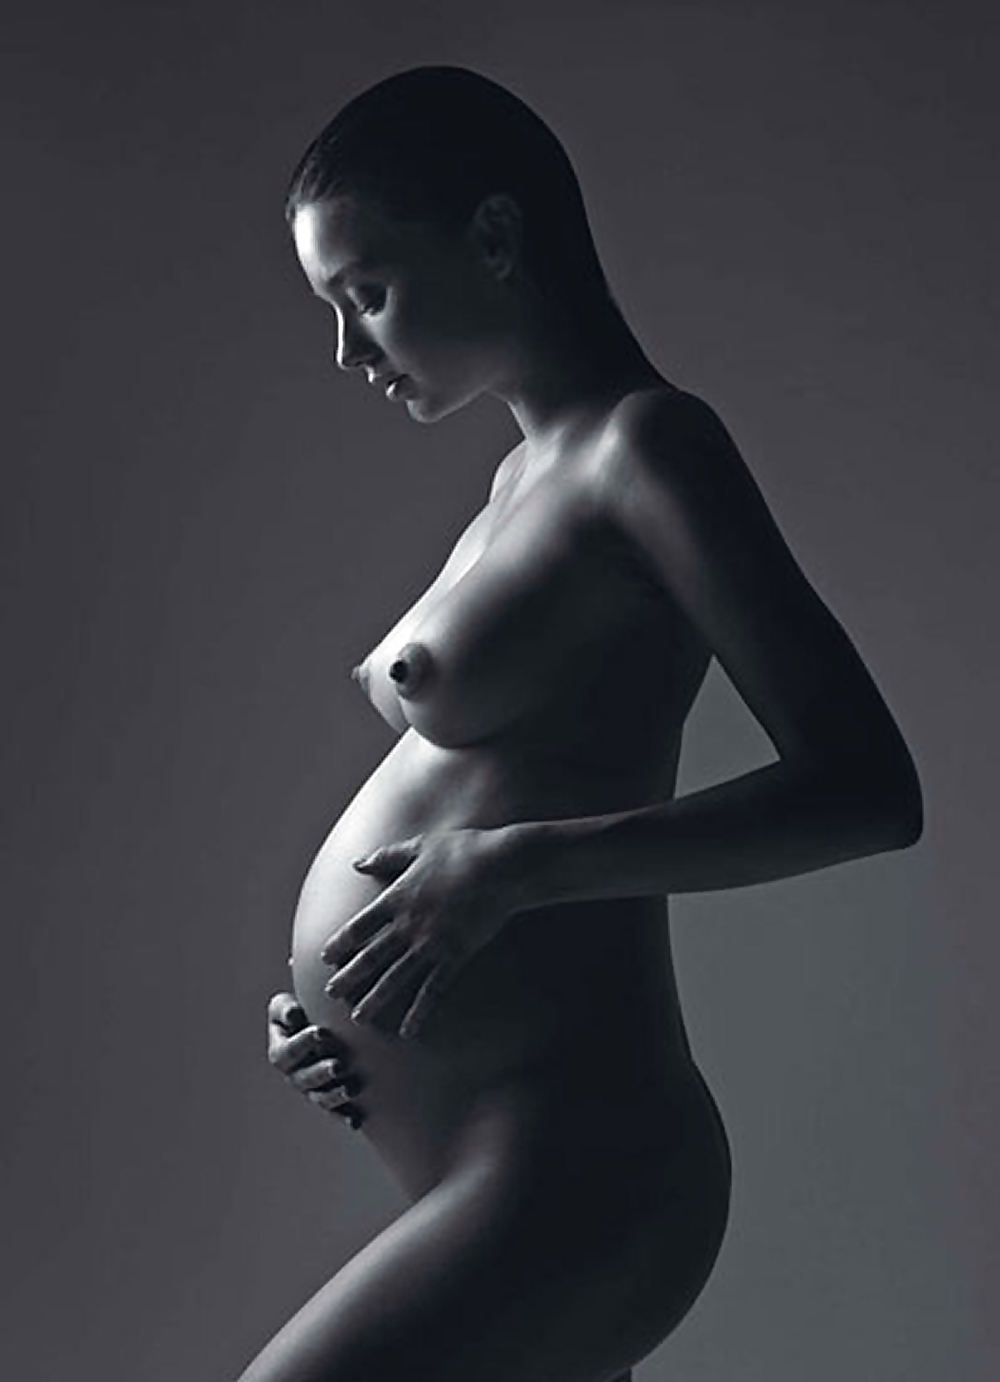 妊娠中のセレブ達 - 本物の写真 - 偽物ではない - londonlad
 #3541076